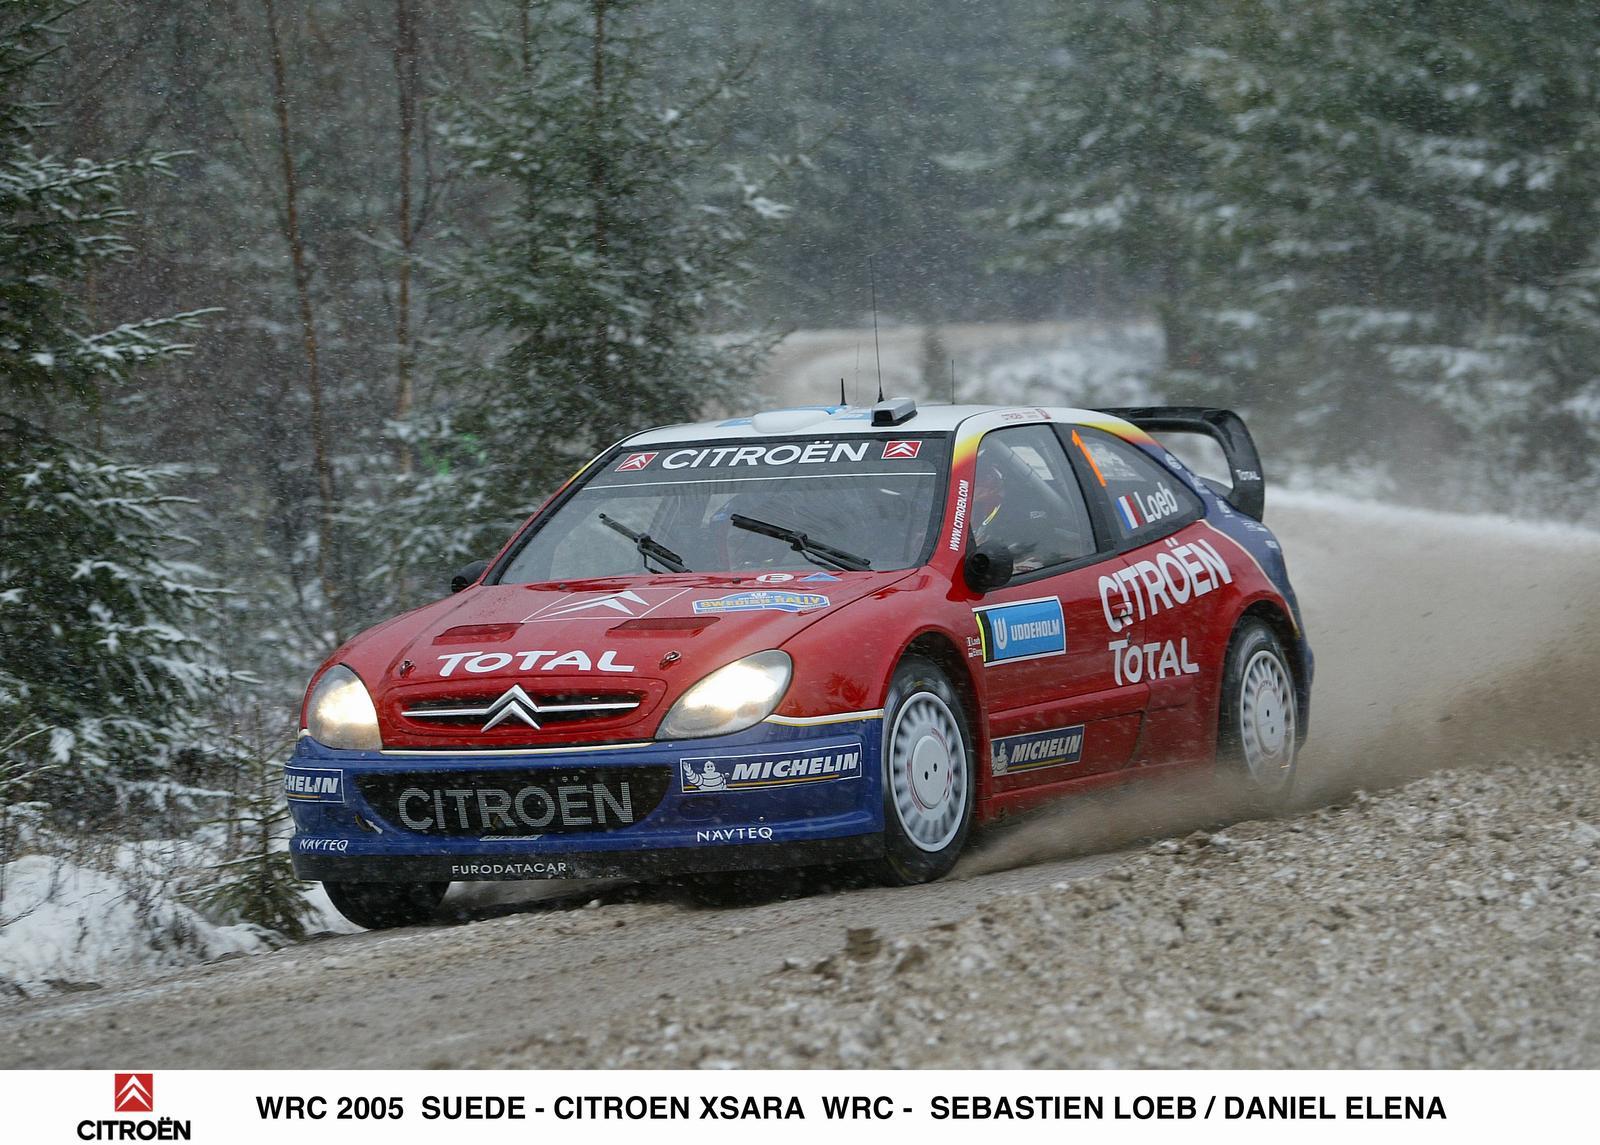 Xsara WRC 2005 in Sweden